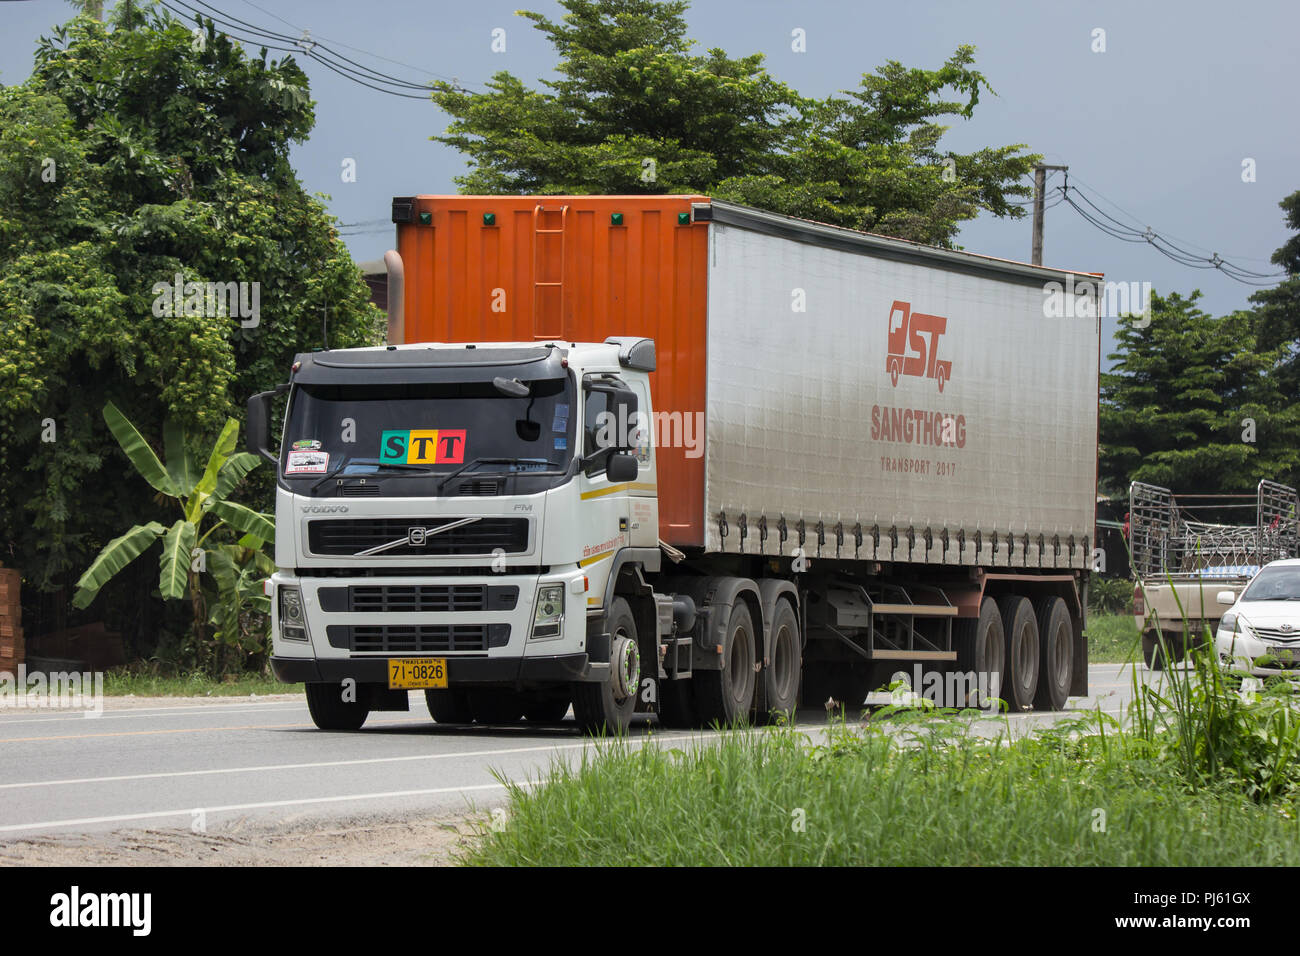 Chiangmai, Thailand - 3. August 2018: Anhänger Container Cargo Truck von SOKO transportieren. Foto an der Straße Nr. 1001 ca. 8 km vom Stadtzentrum, Thailand. Stockfoto